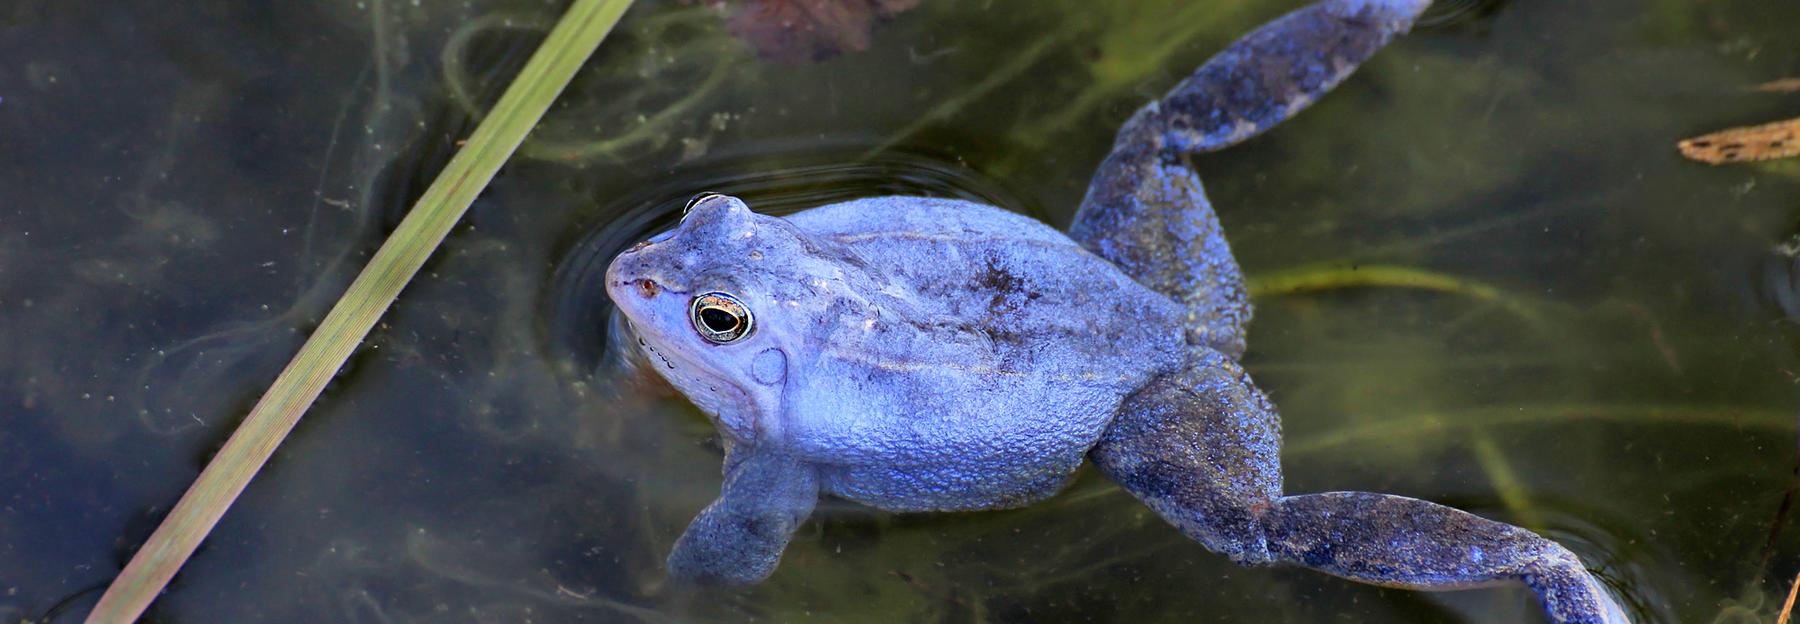 schwimmendes Moorfrosch-Männchen, zur Balzzeit blau gefärbt